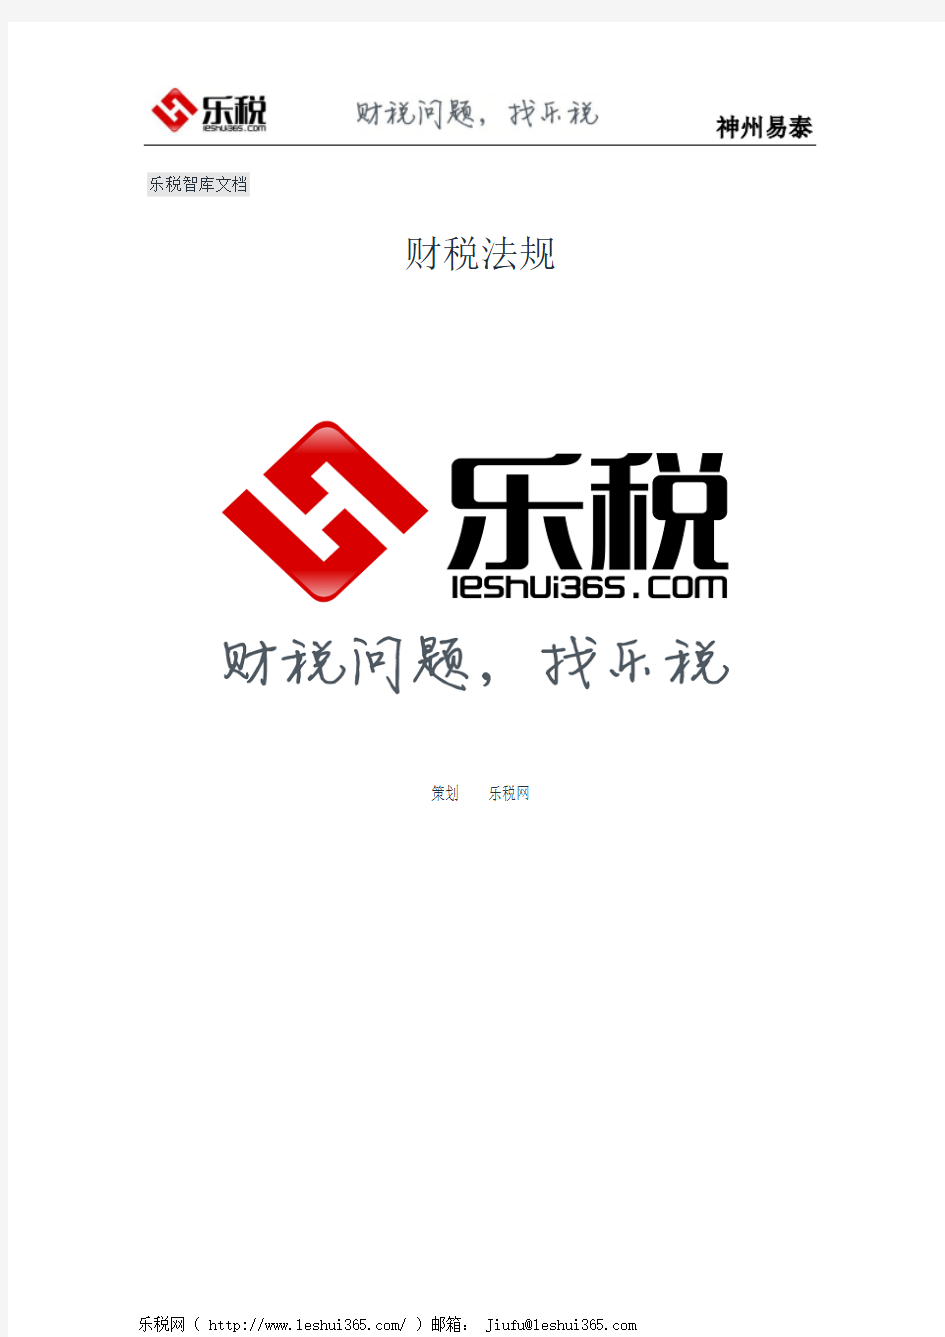 北京市地方税务局转发国家税务总局关于转发《中华人民共和国政府